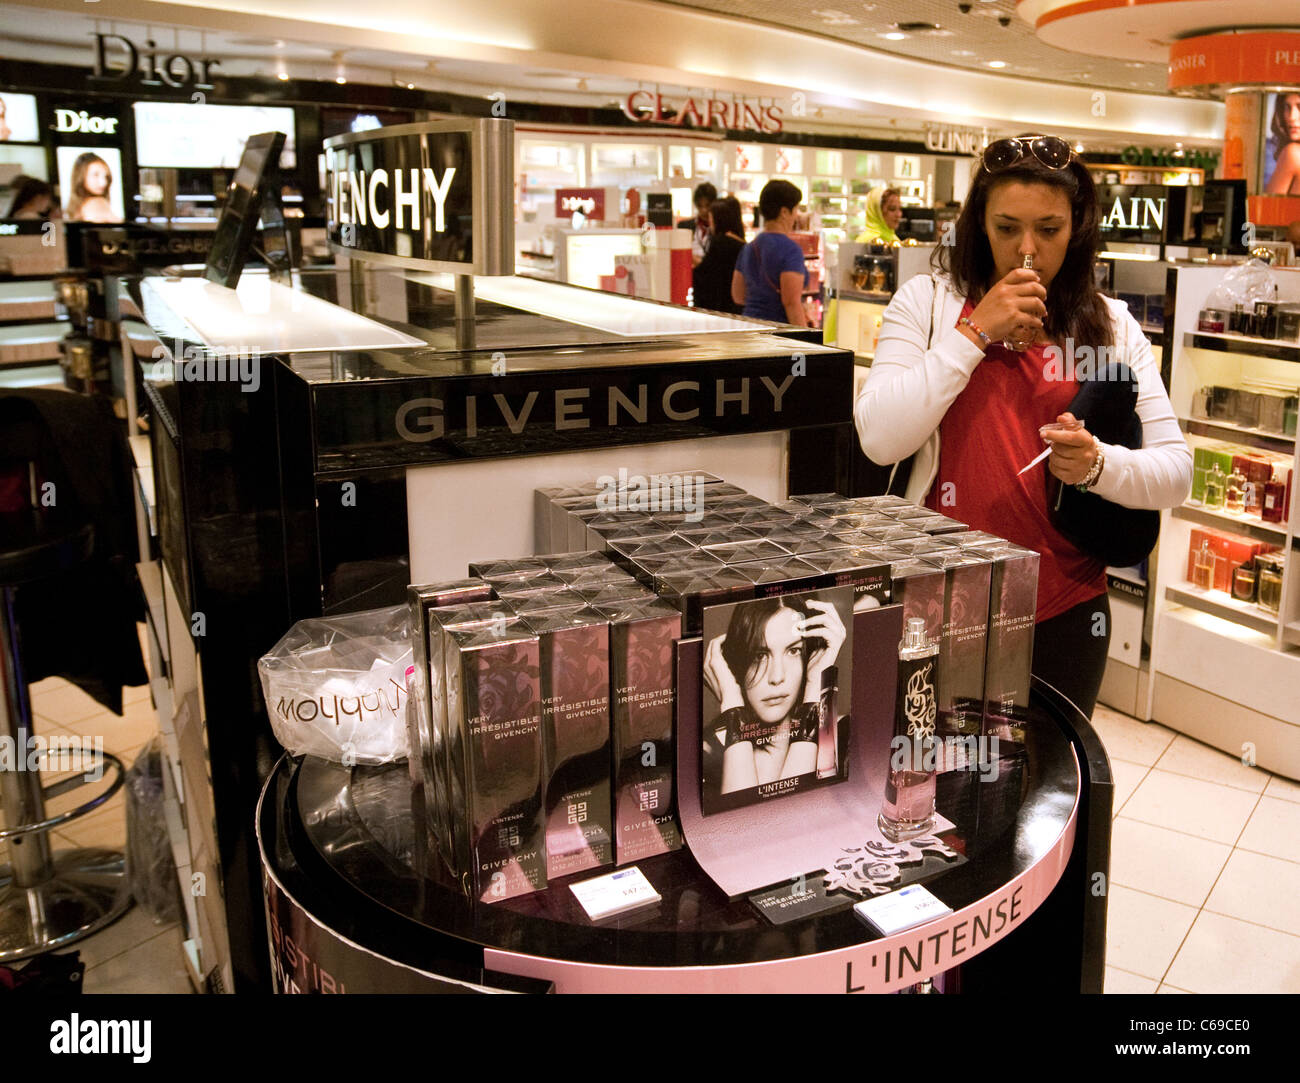 Une adolescente essayant Givenchy parfum, la boutique hors taxes, Terminal 3 de l'aéroport Heathrow de Londres, UK Banque D'Images